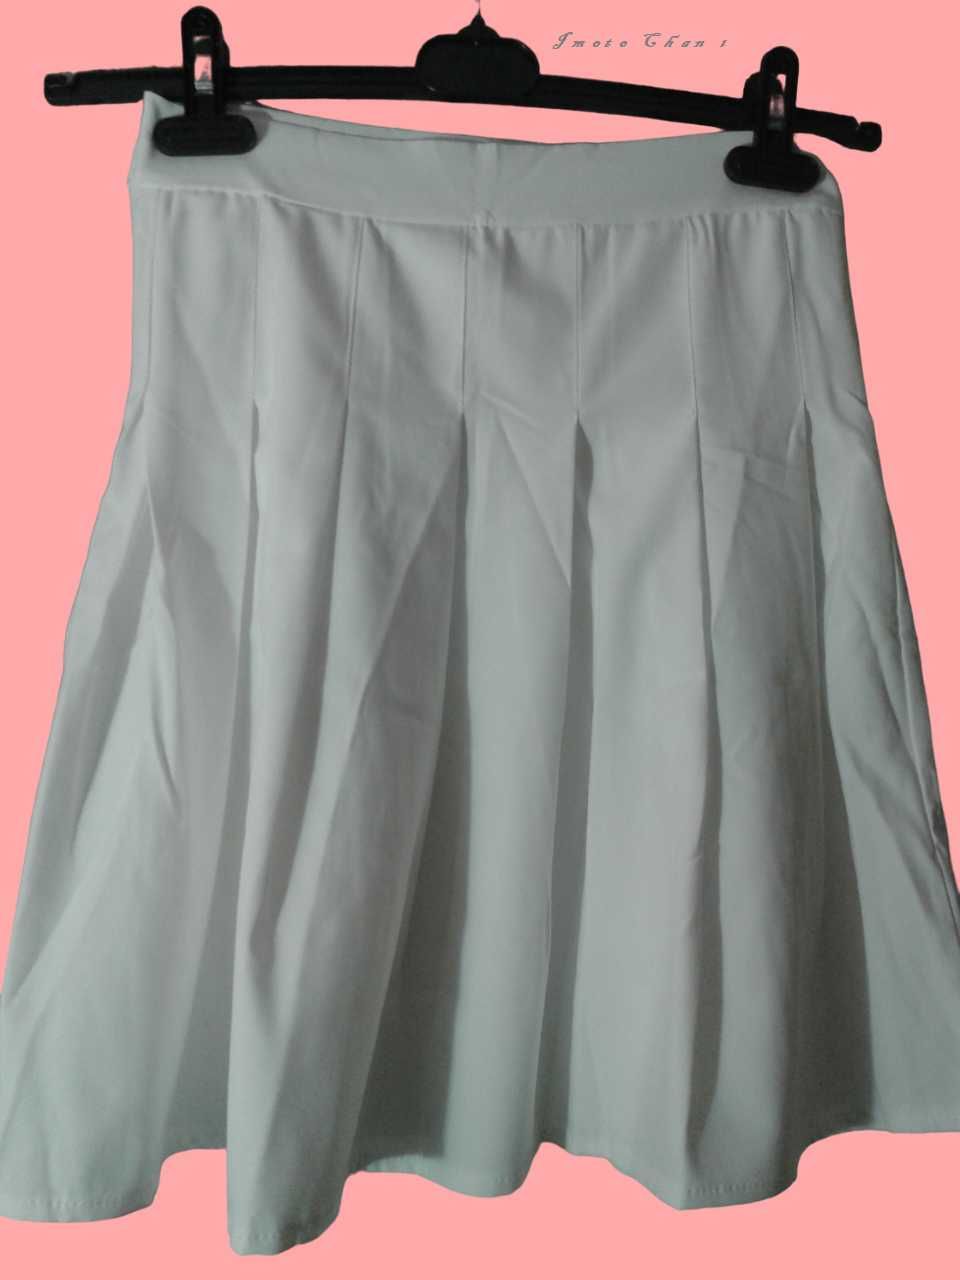 Теннисный костюм белый  топ с завязками жакет + юбка